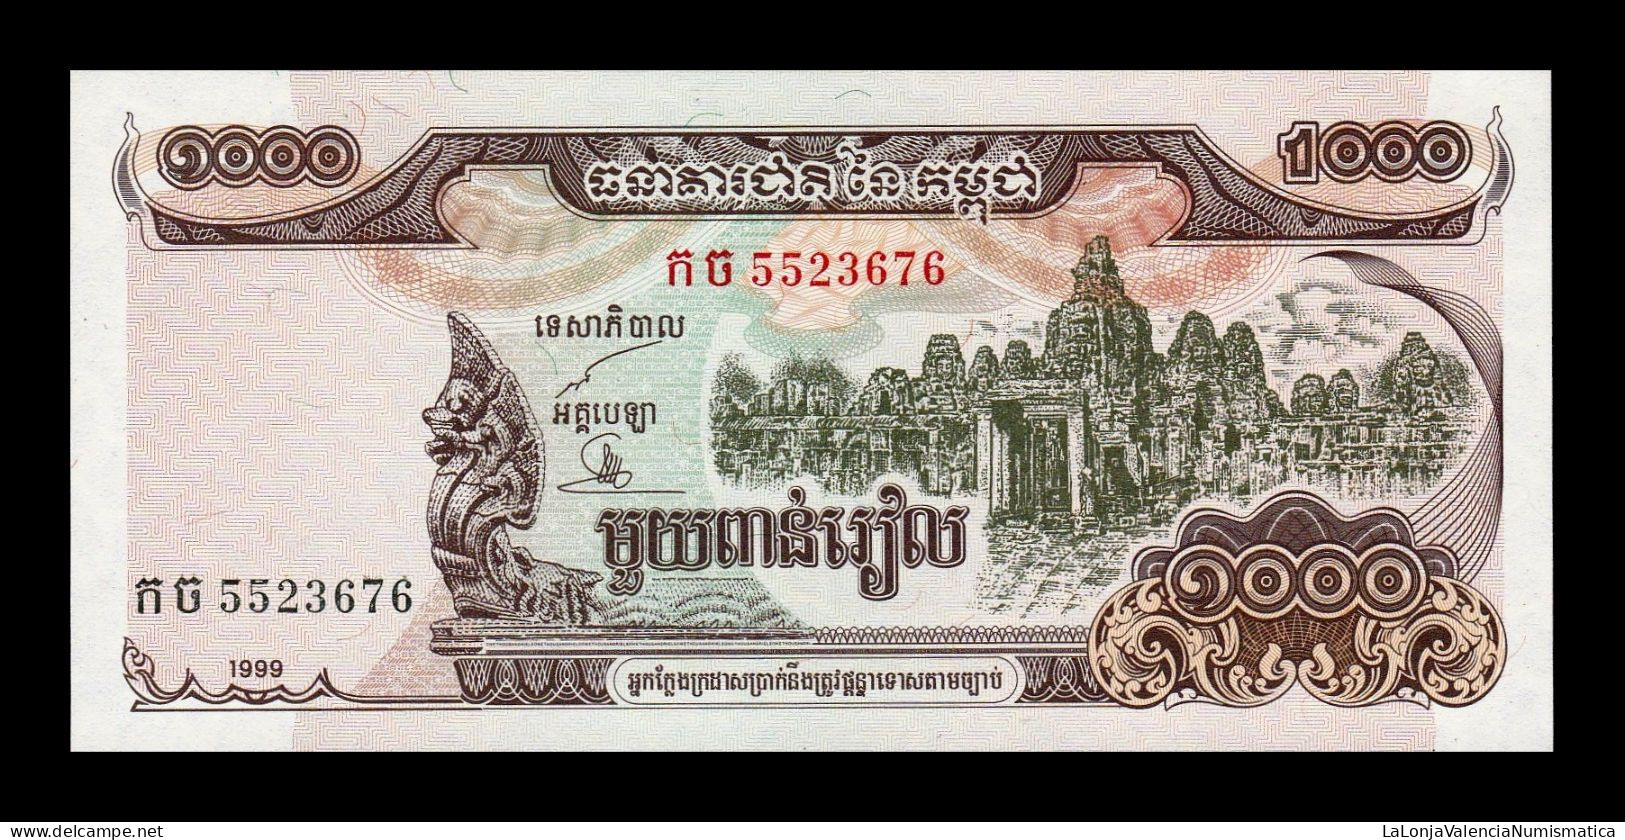 Camboya Cambodia 1000 Riels 1999 Pick 51 Sc Unc - Cambodia